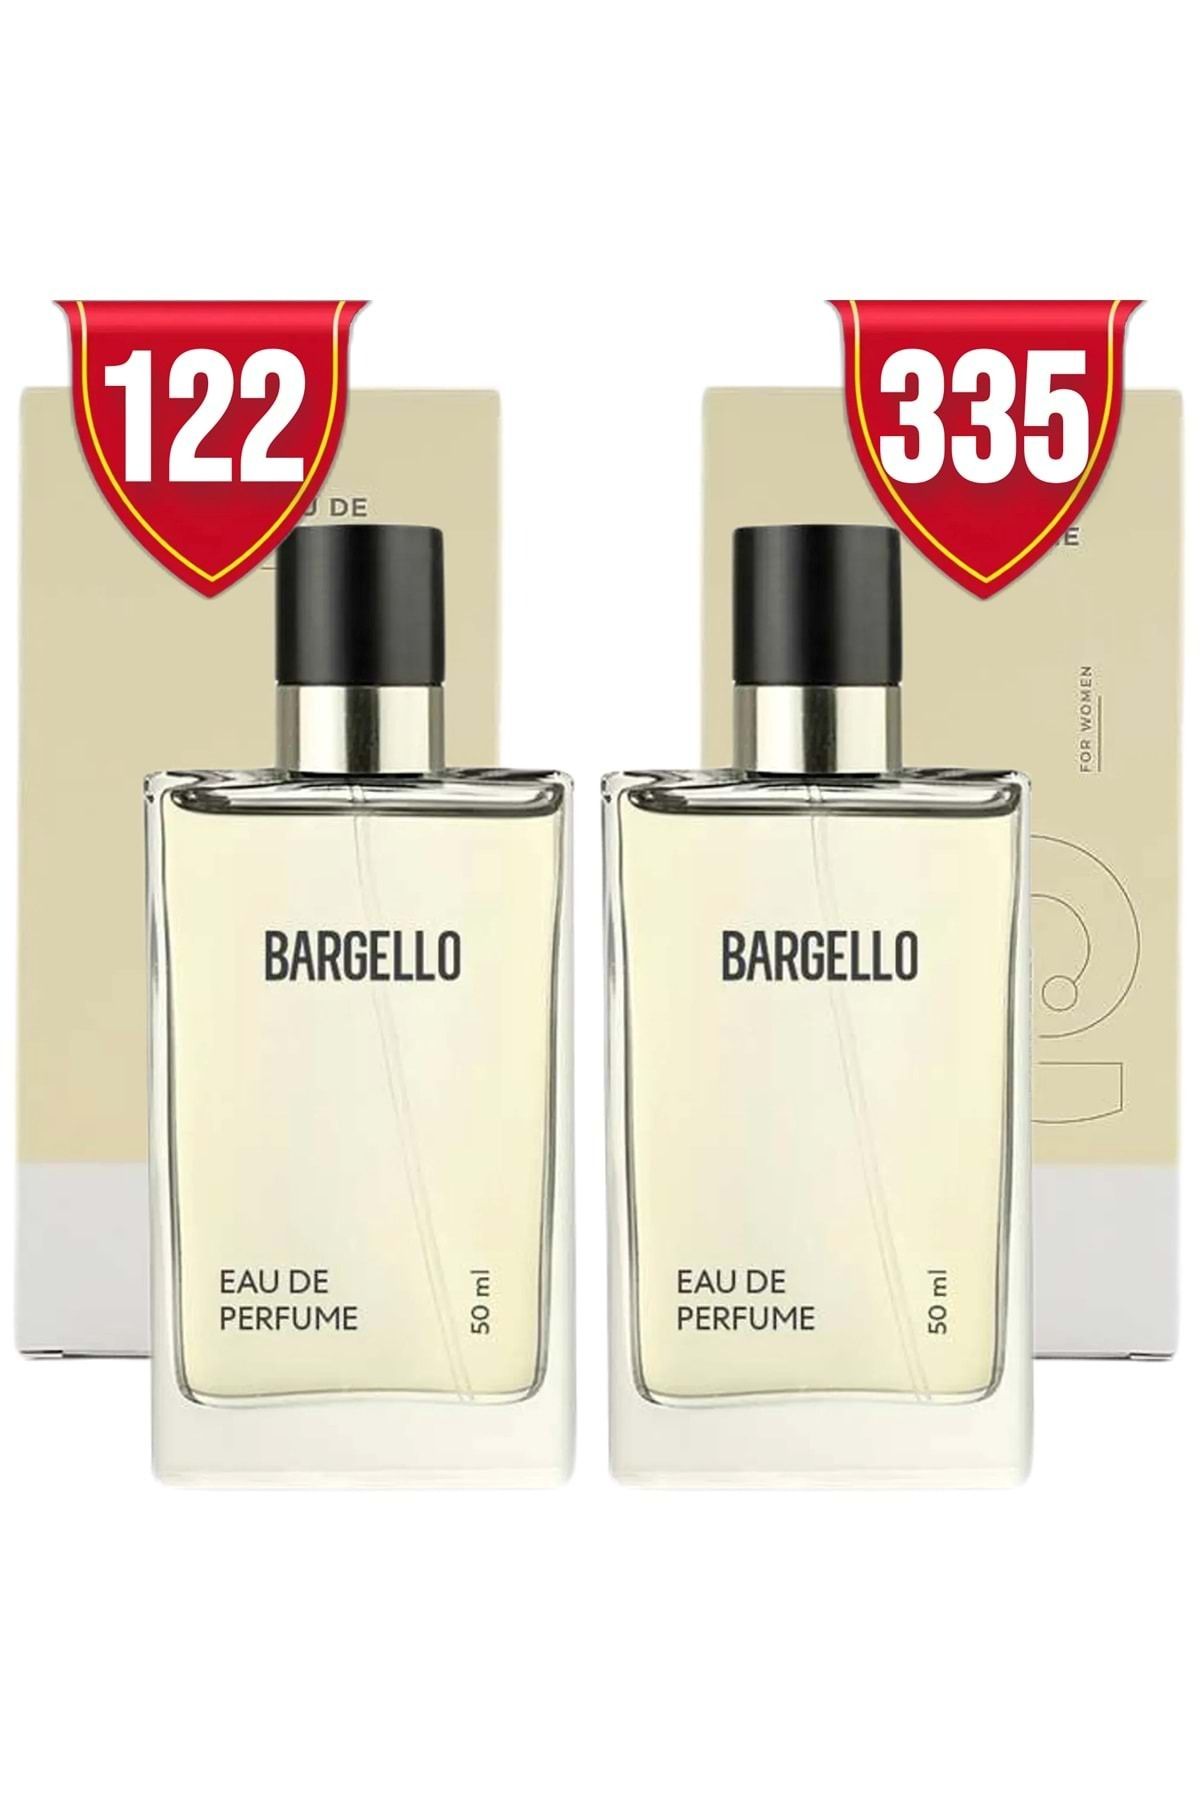 Bargello 122 Oriental 335 Floral 50 ml Edp